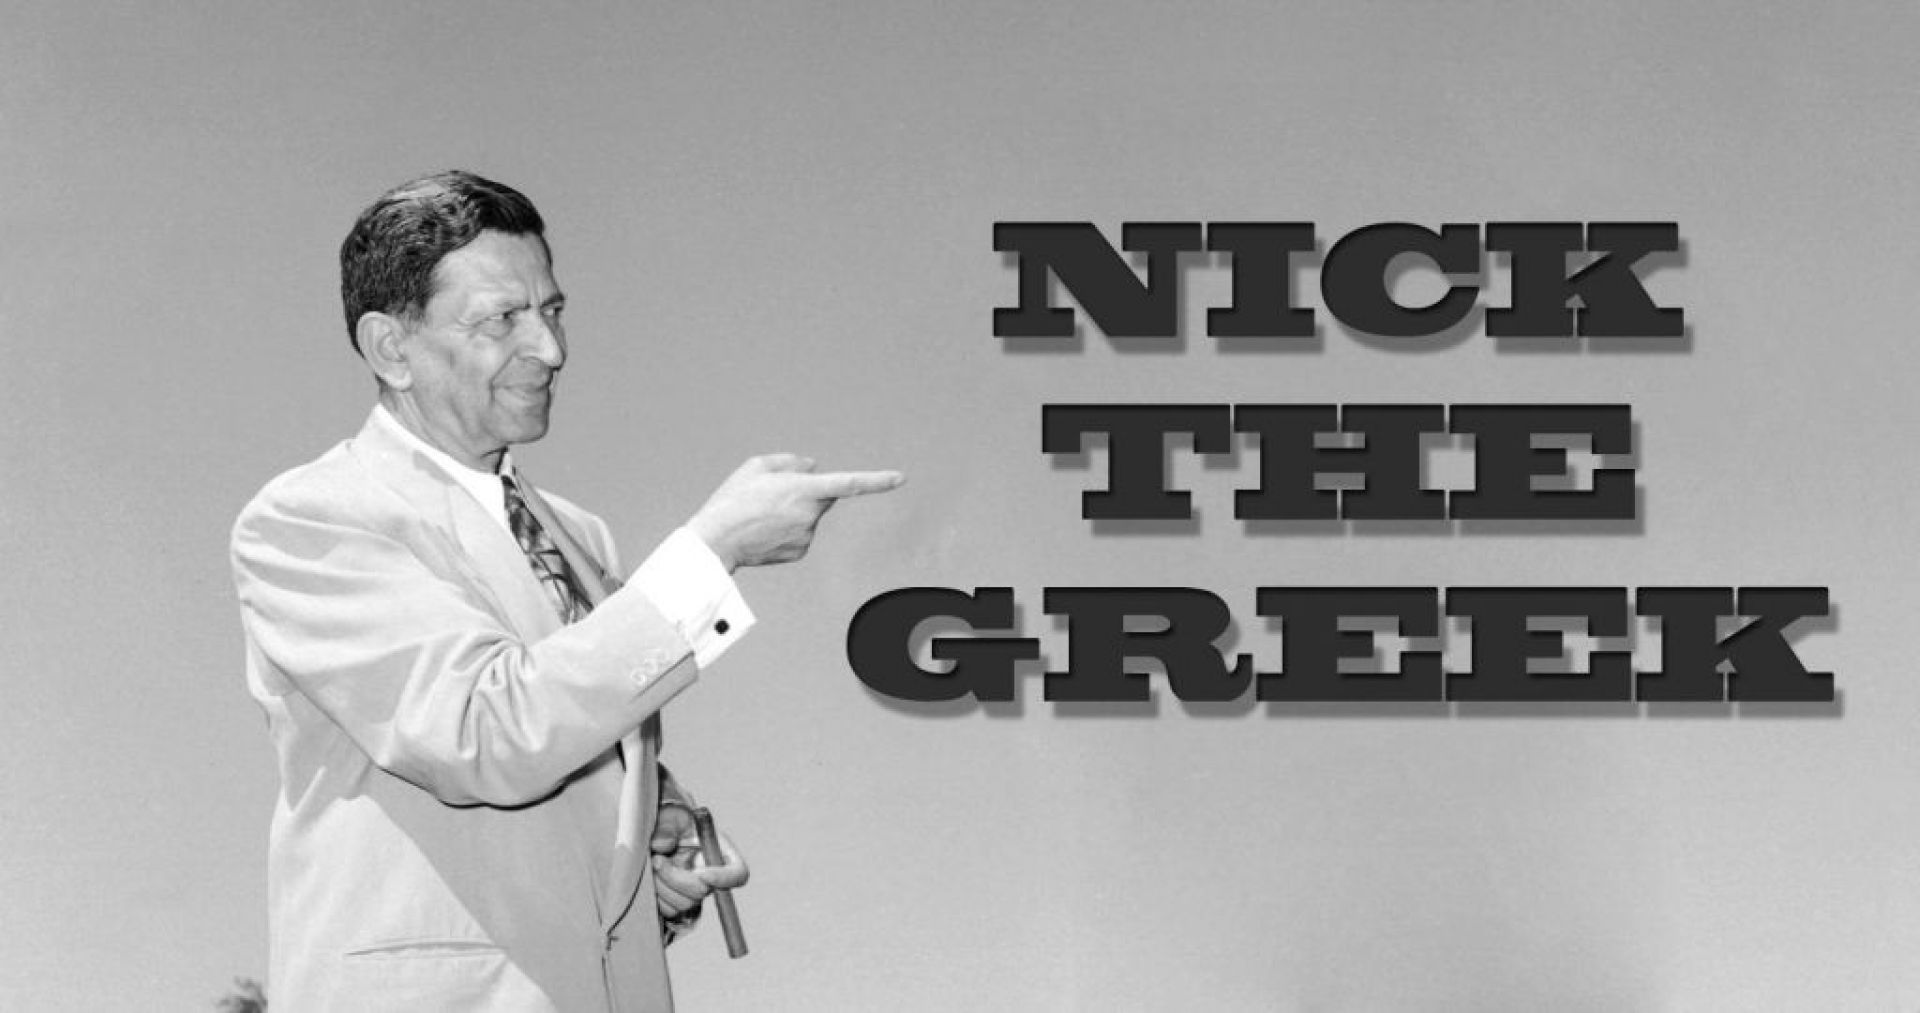 «Nick The Greek»: Έπαιξε 8 συνεχόμενες ημέρες πόκερ, μέχρι που πέθανε